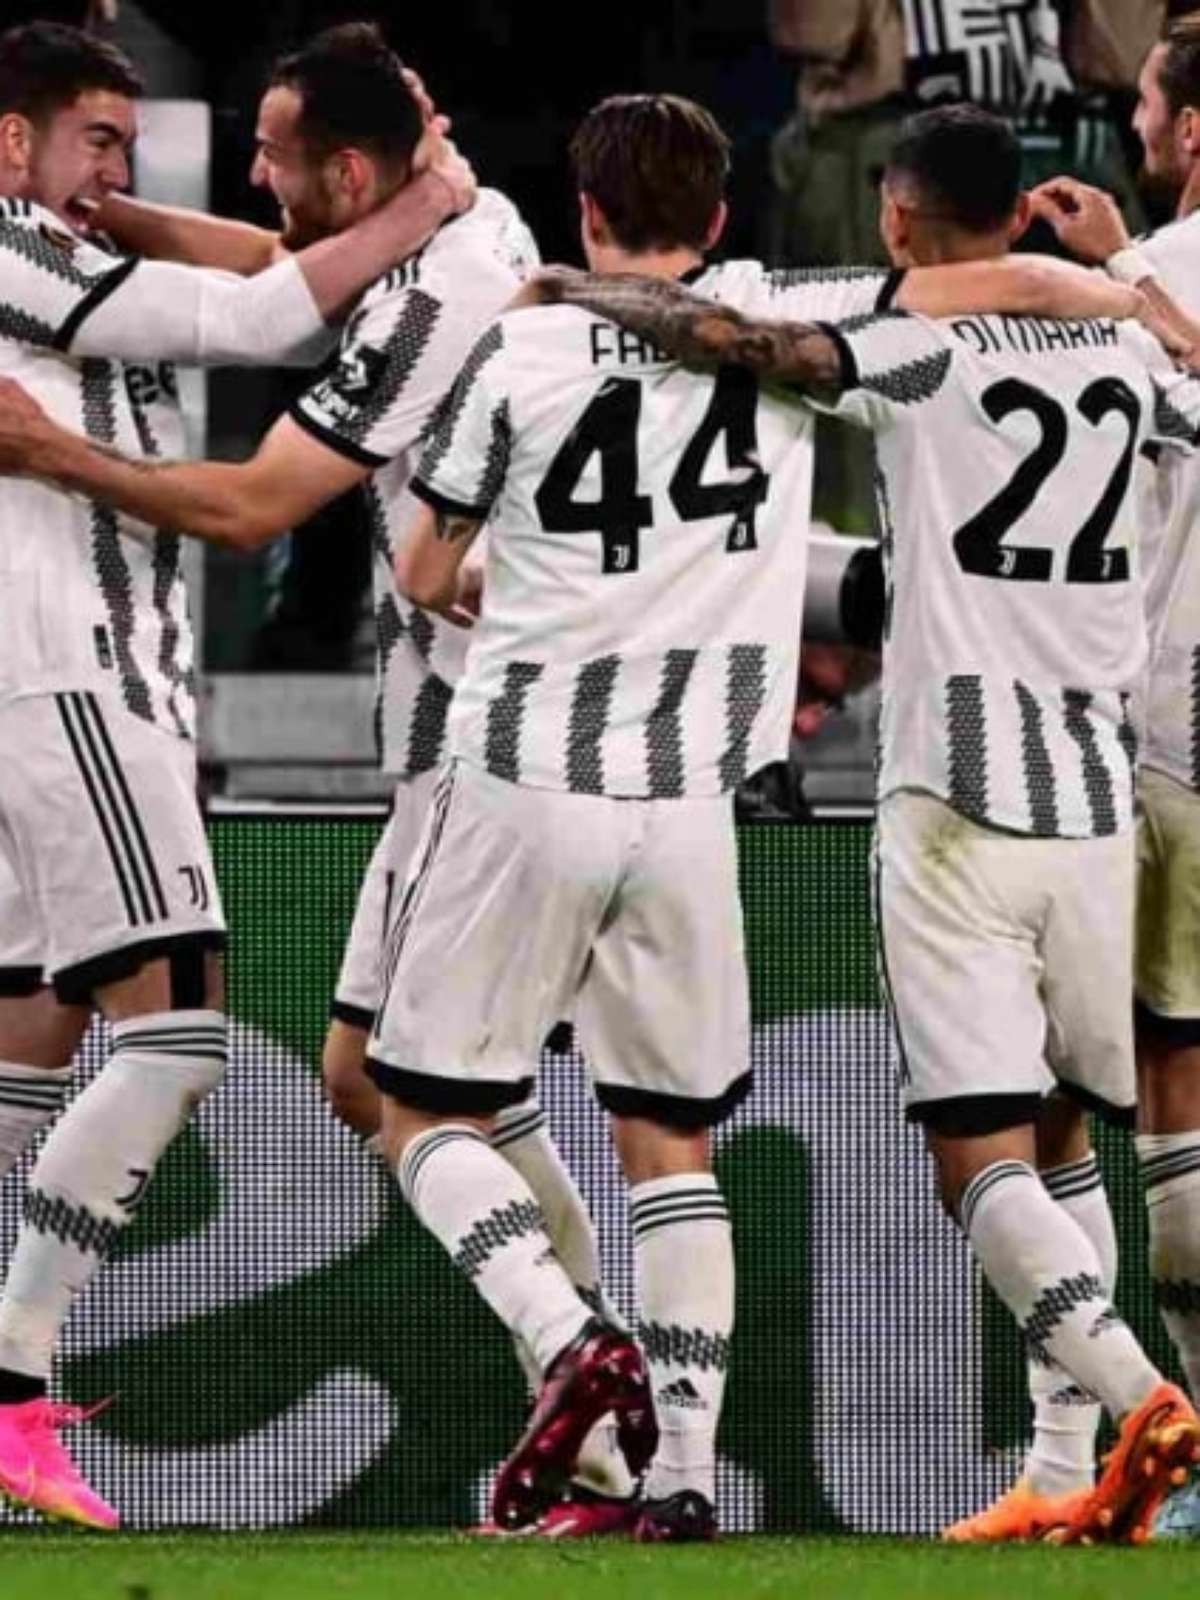 Campeonato Italiano: saiba onde assistir e as prováveis escalações de  Bologna x Juventus